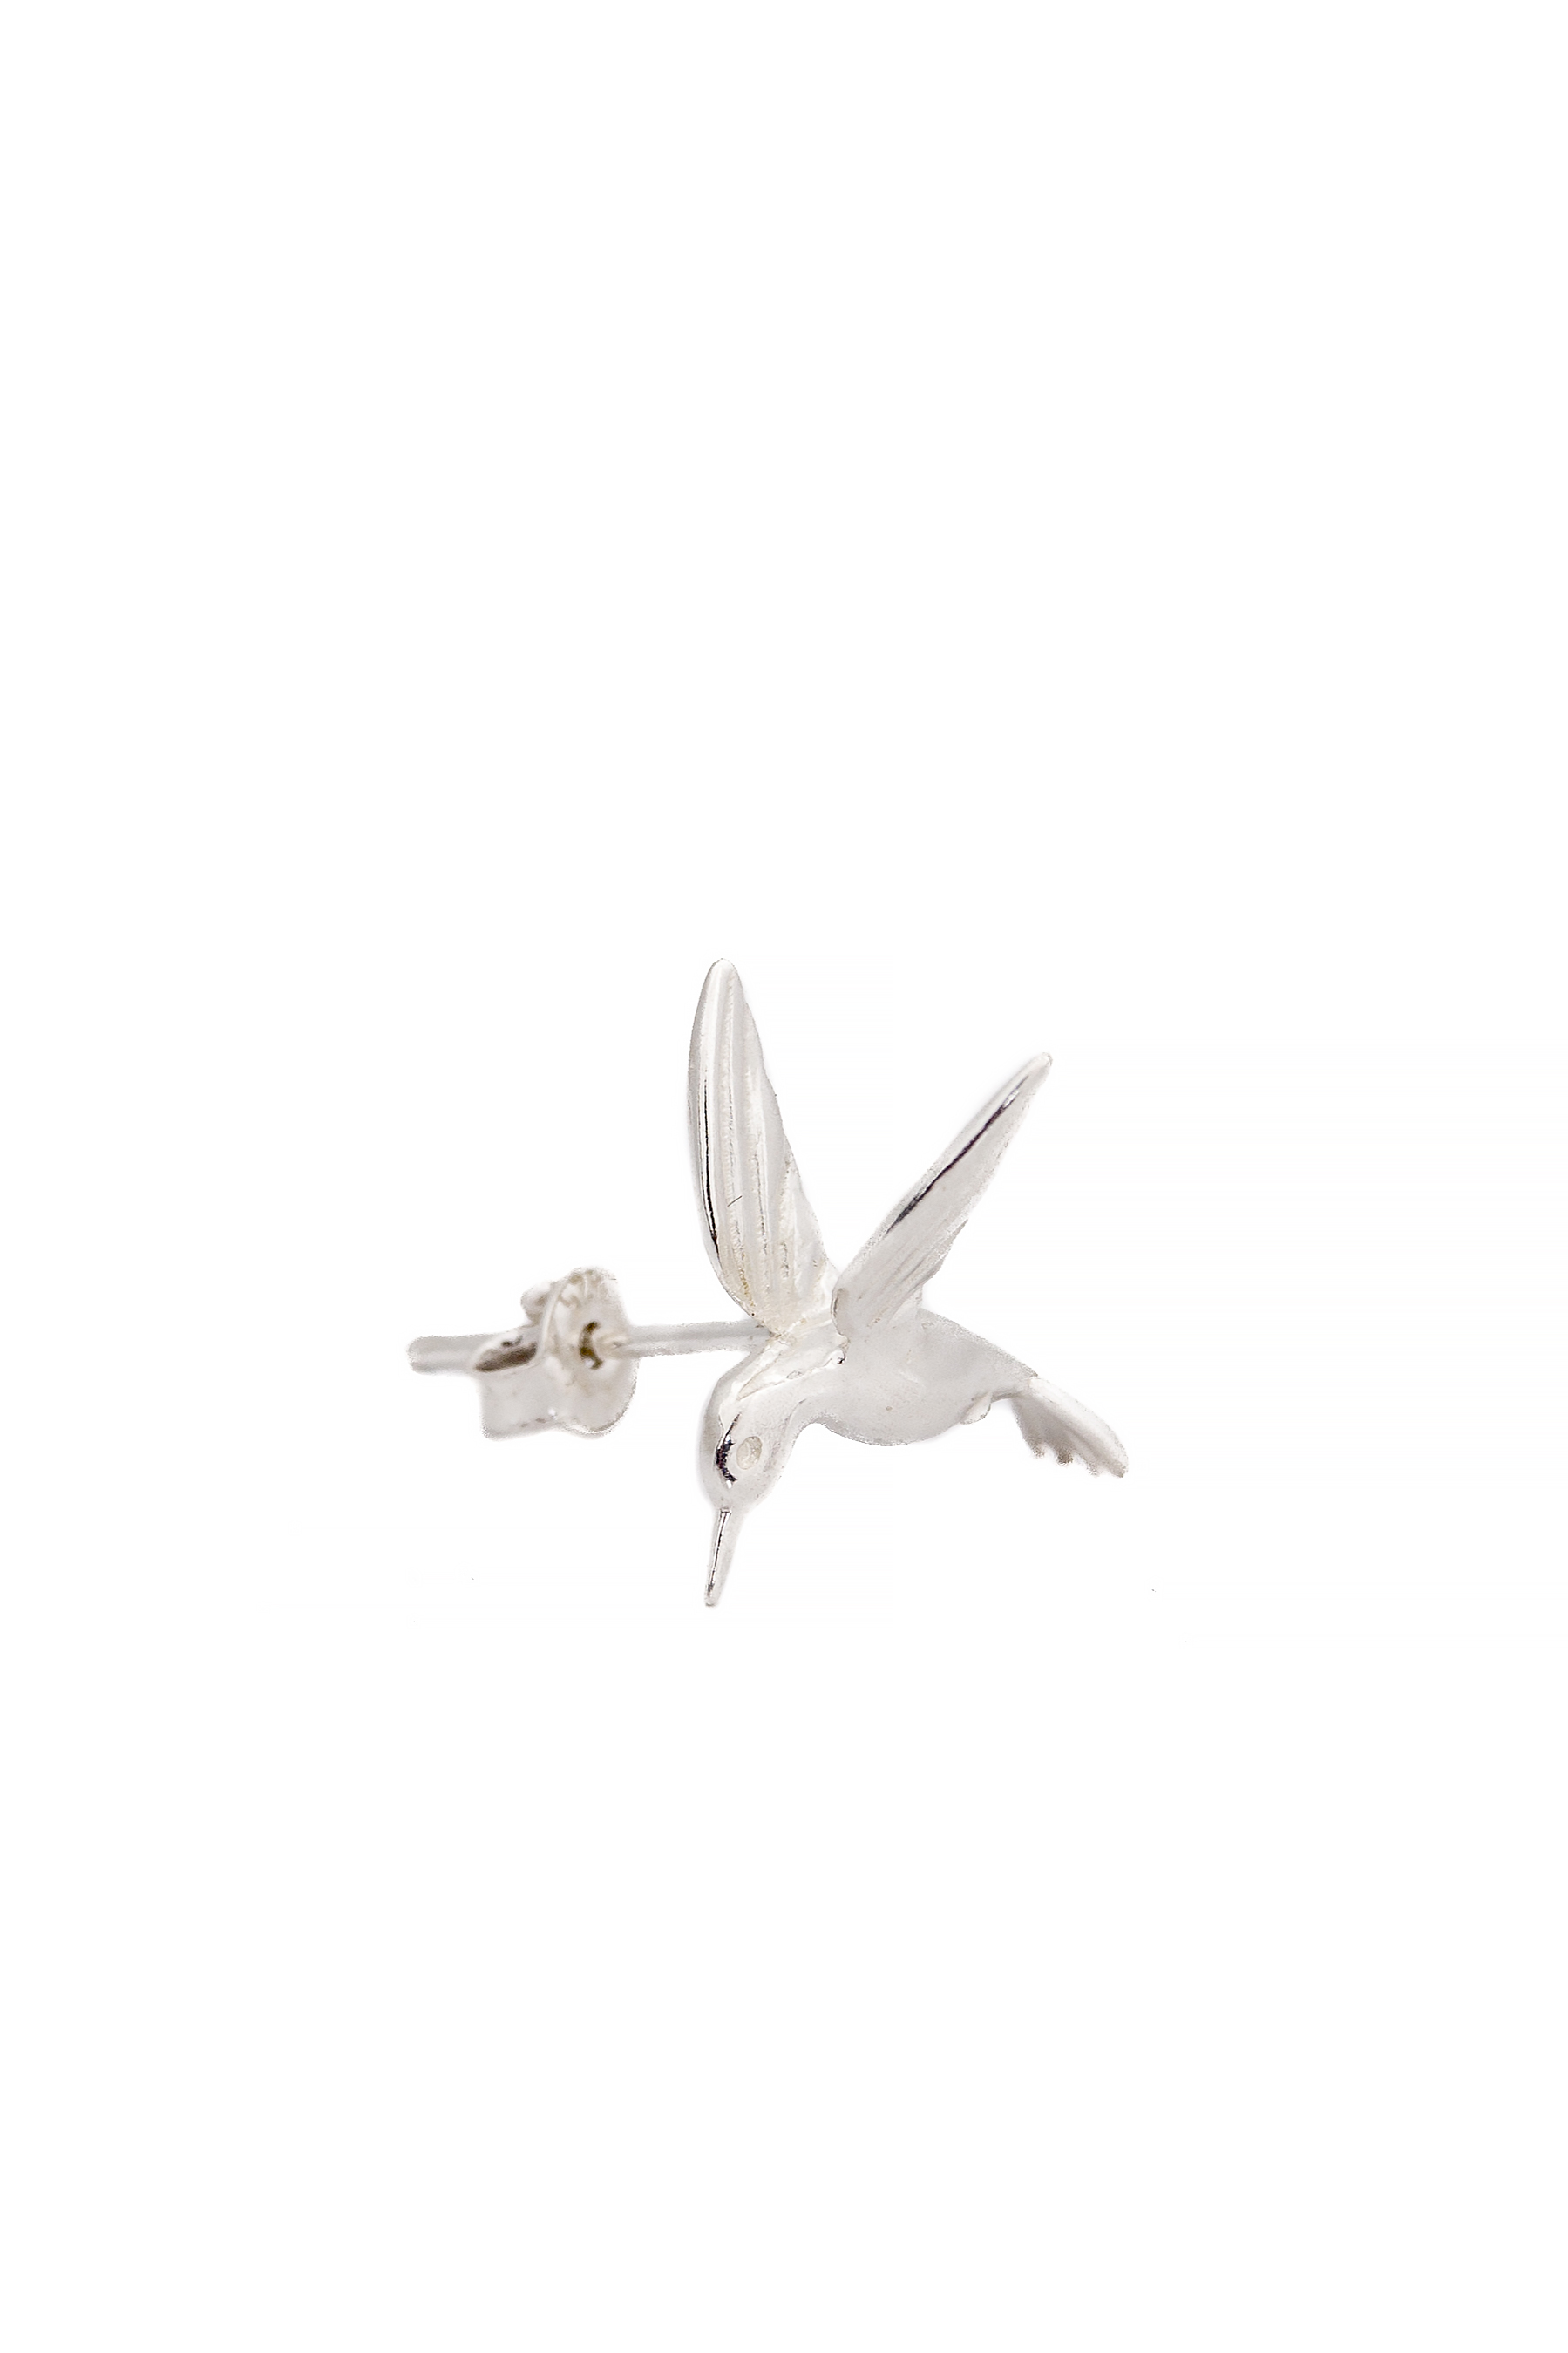 Cercei din argint cu pasare colibri Snob. imagine 1